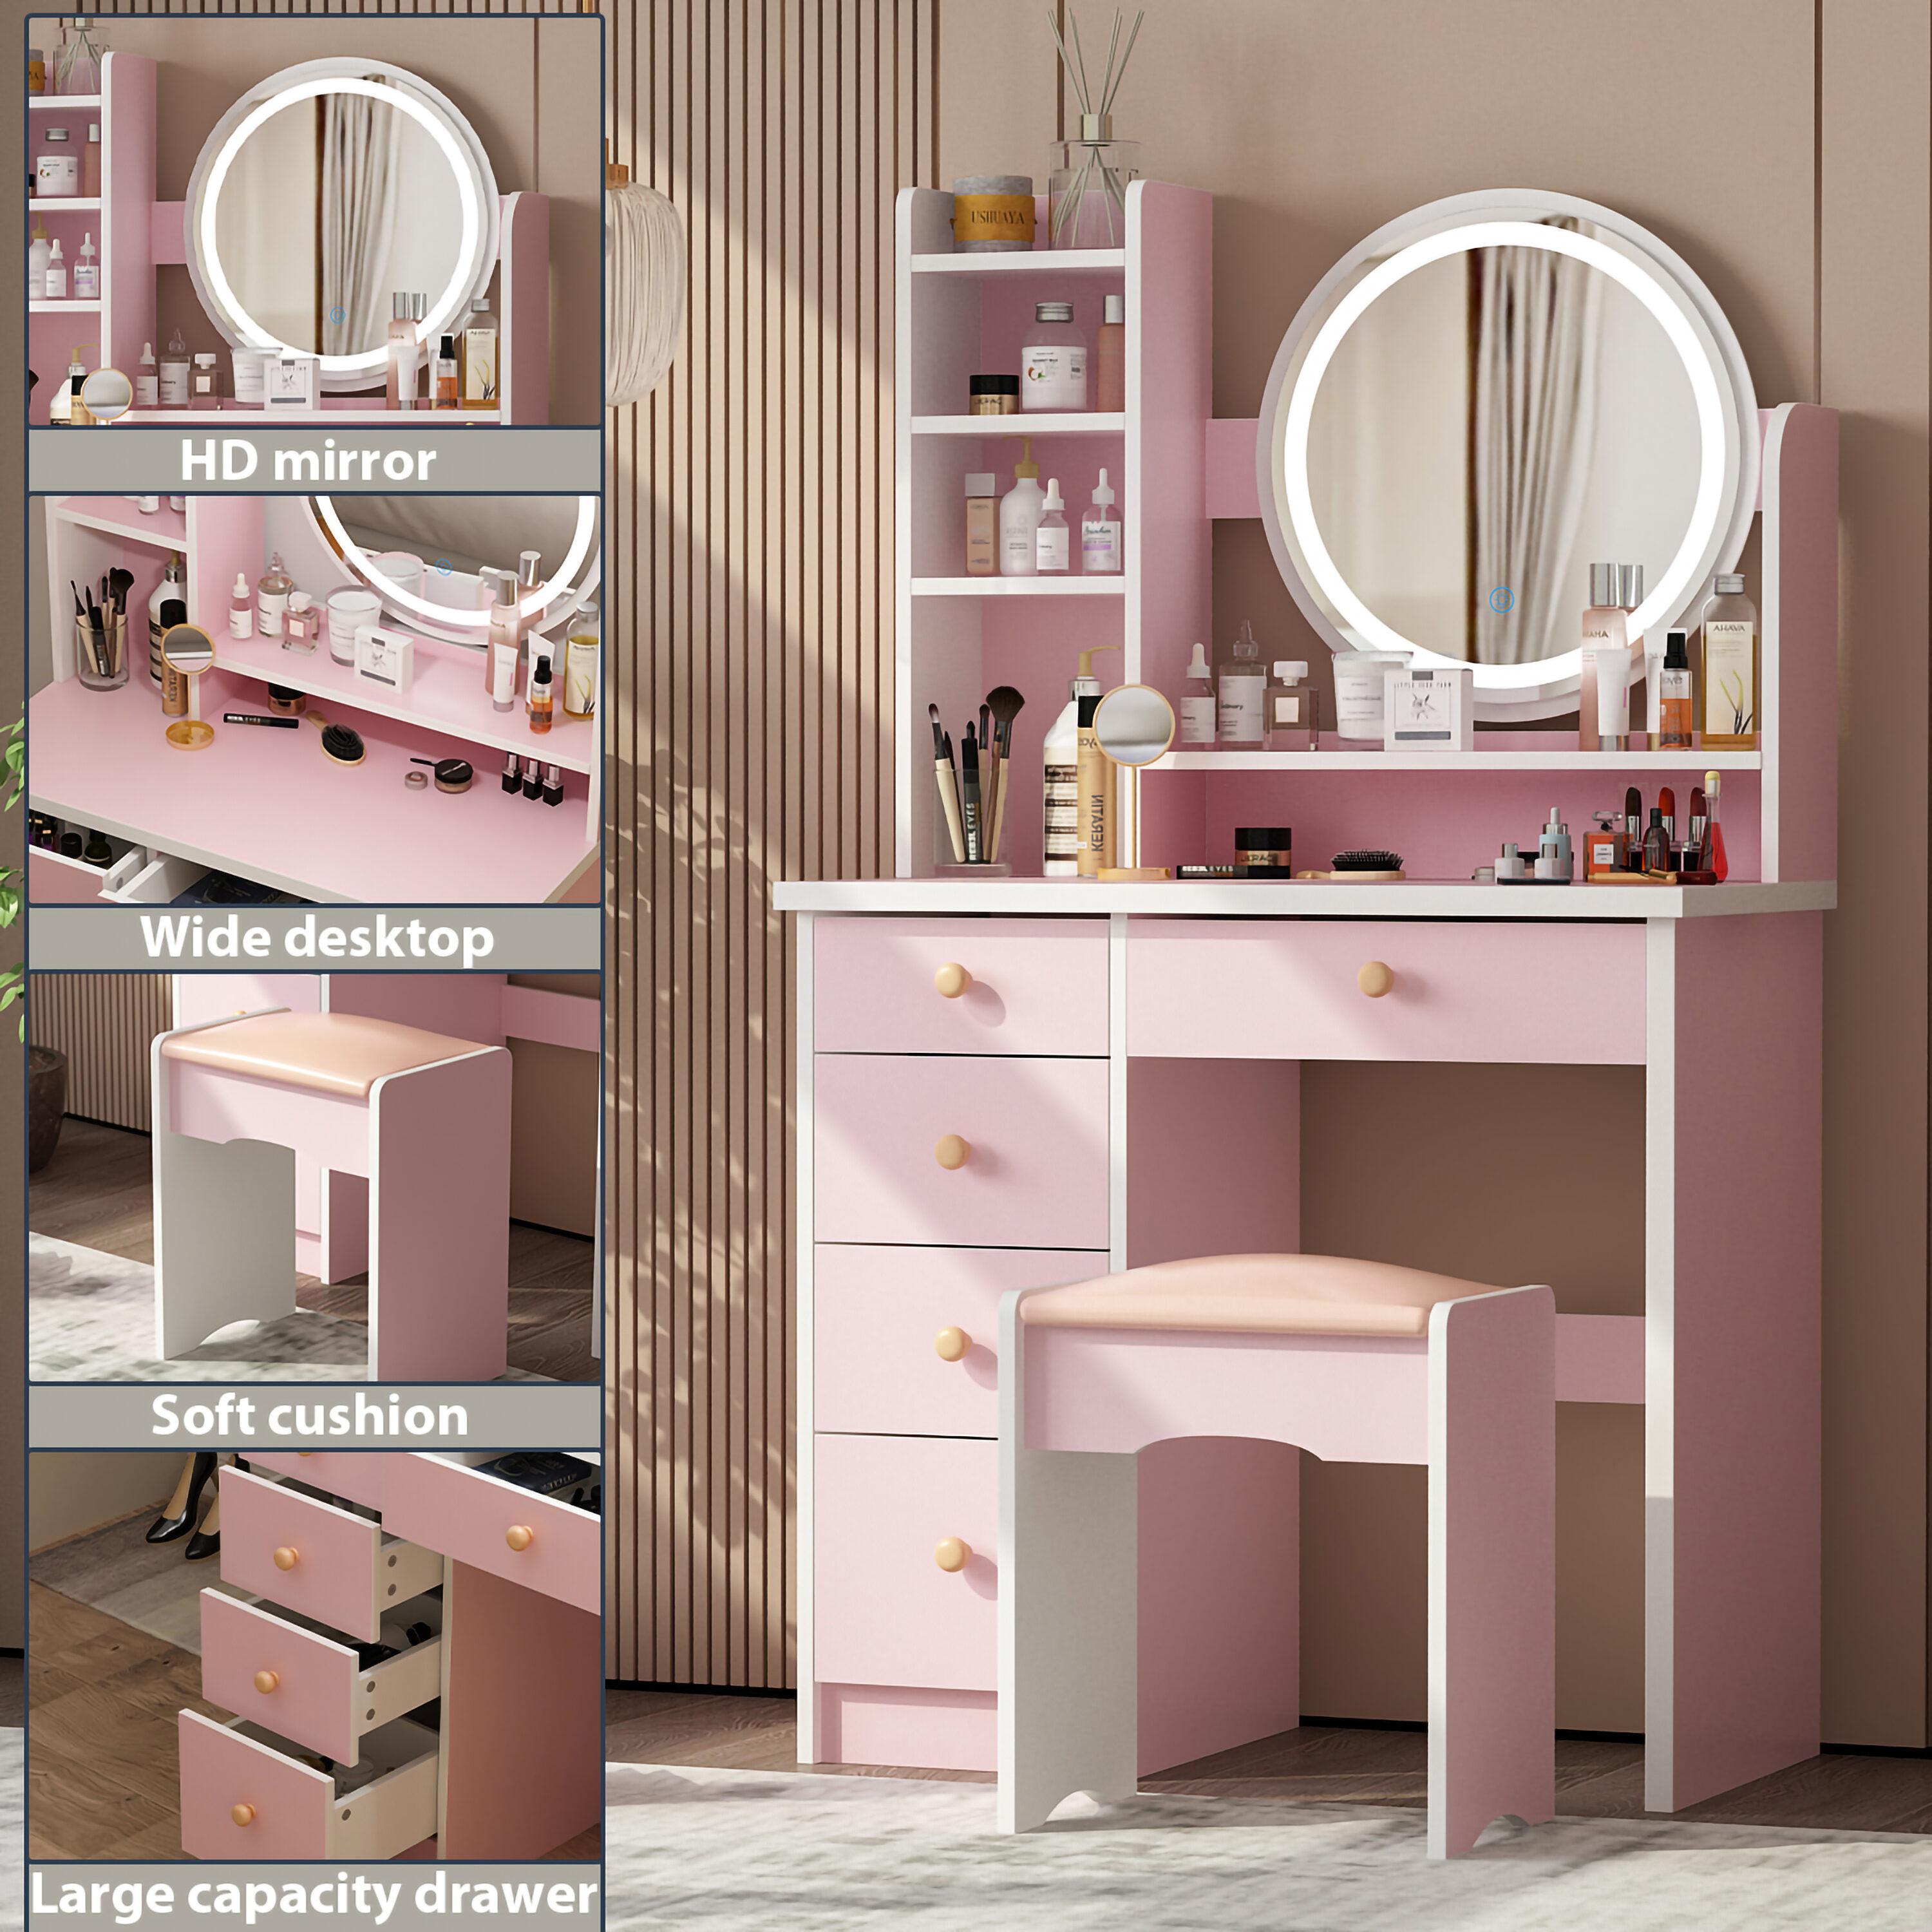 Vanity Light Up Locker Mirror - Pink - U Brands - Crown Office